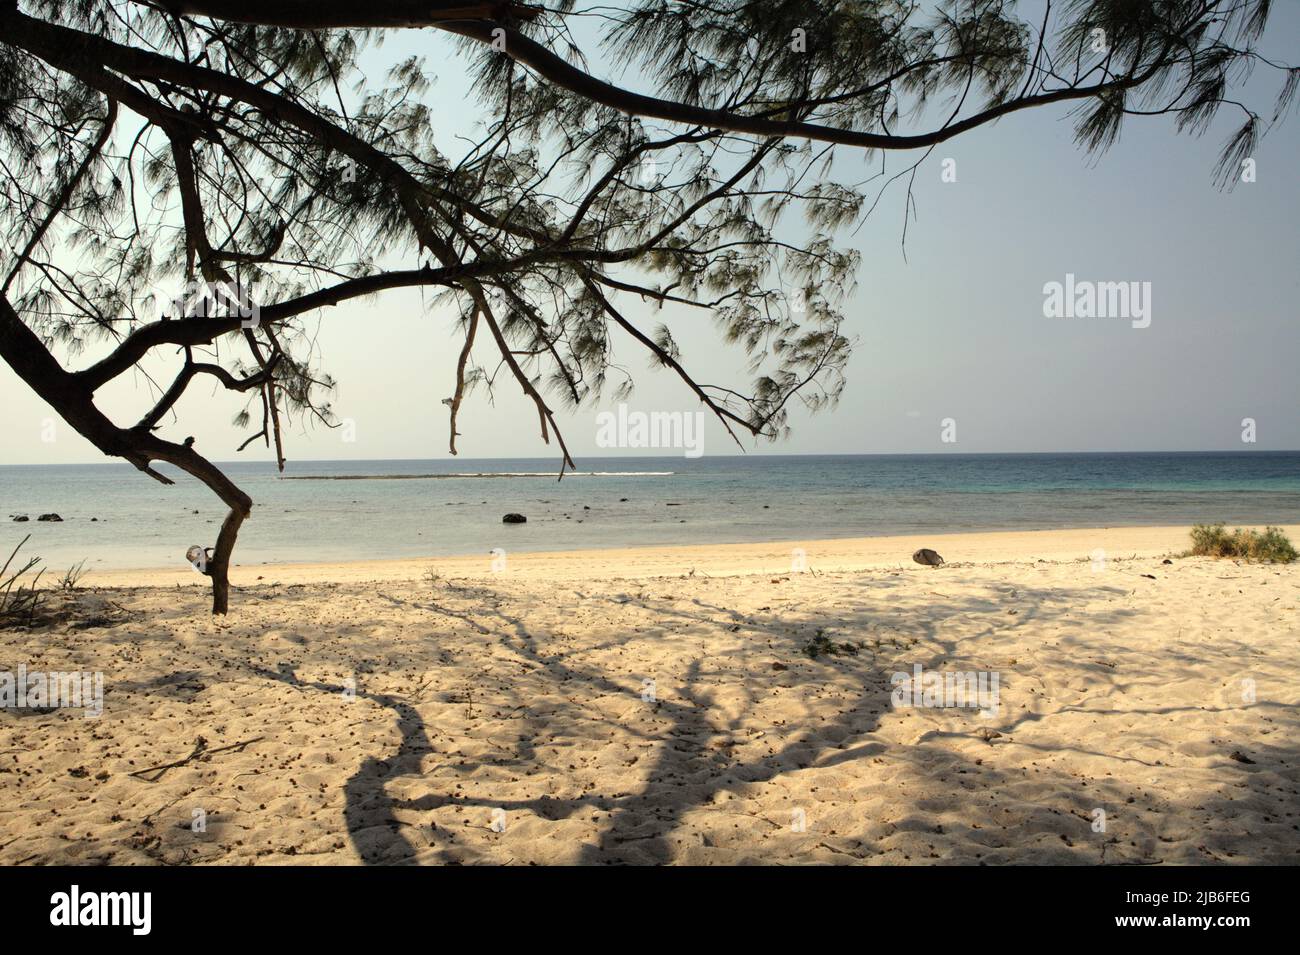 Puru Kambera, ein Sandstrand in Mondu, Kanatang, East Sumba, East Nusa Tenggara, Indonesien. Dieser Strand könnte zu den halben Sandstränden der Welt gehören, die bis zum Ende des Jahrhunderts verschwinden könnten, wenn der Klimawandel unvermindert weitergeht, wie Klimawissenschaftler in ihrer Publikation über Nature Climate Change vom März 2020 berichteten. Stockfoto